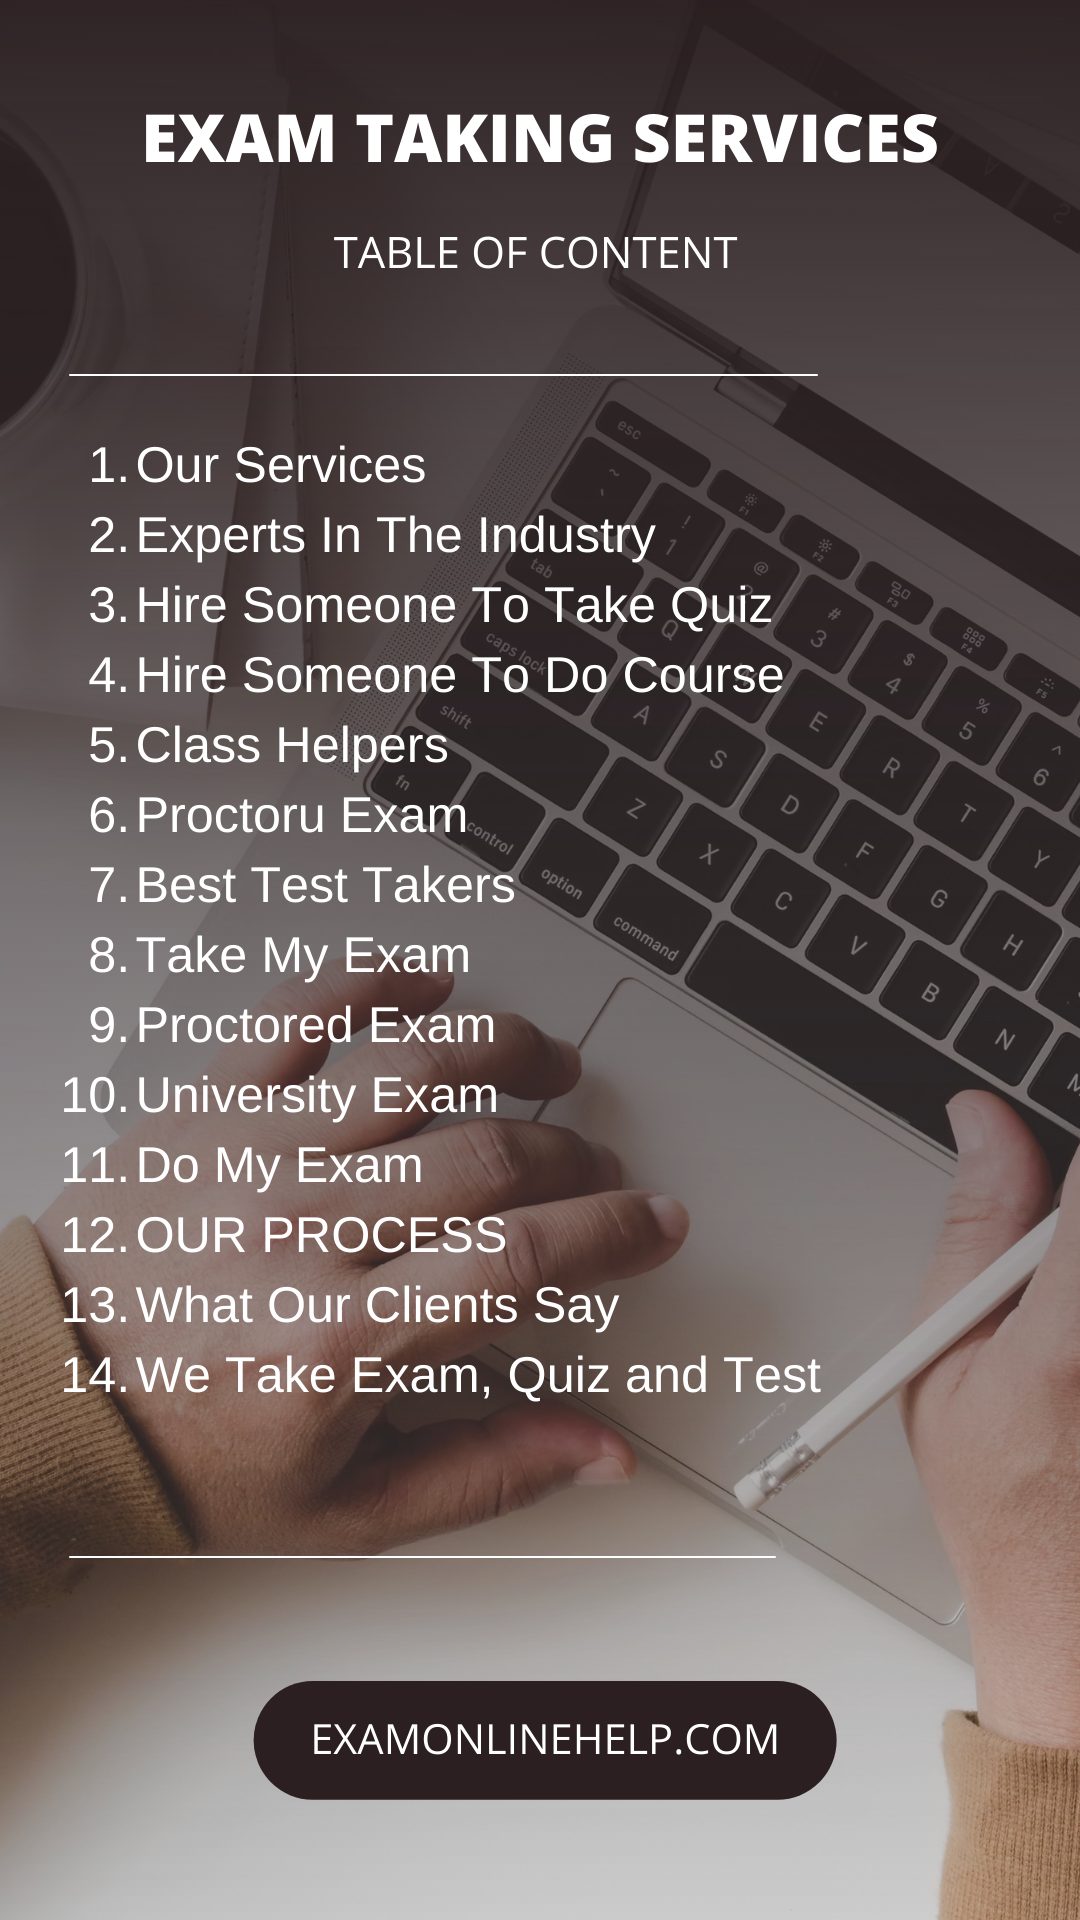 Exam Taking Services Checklist